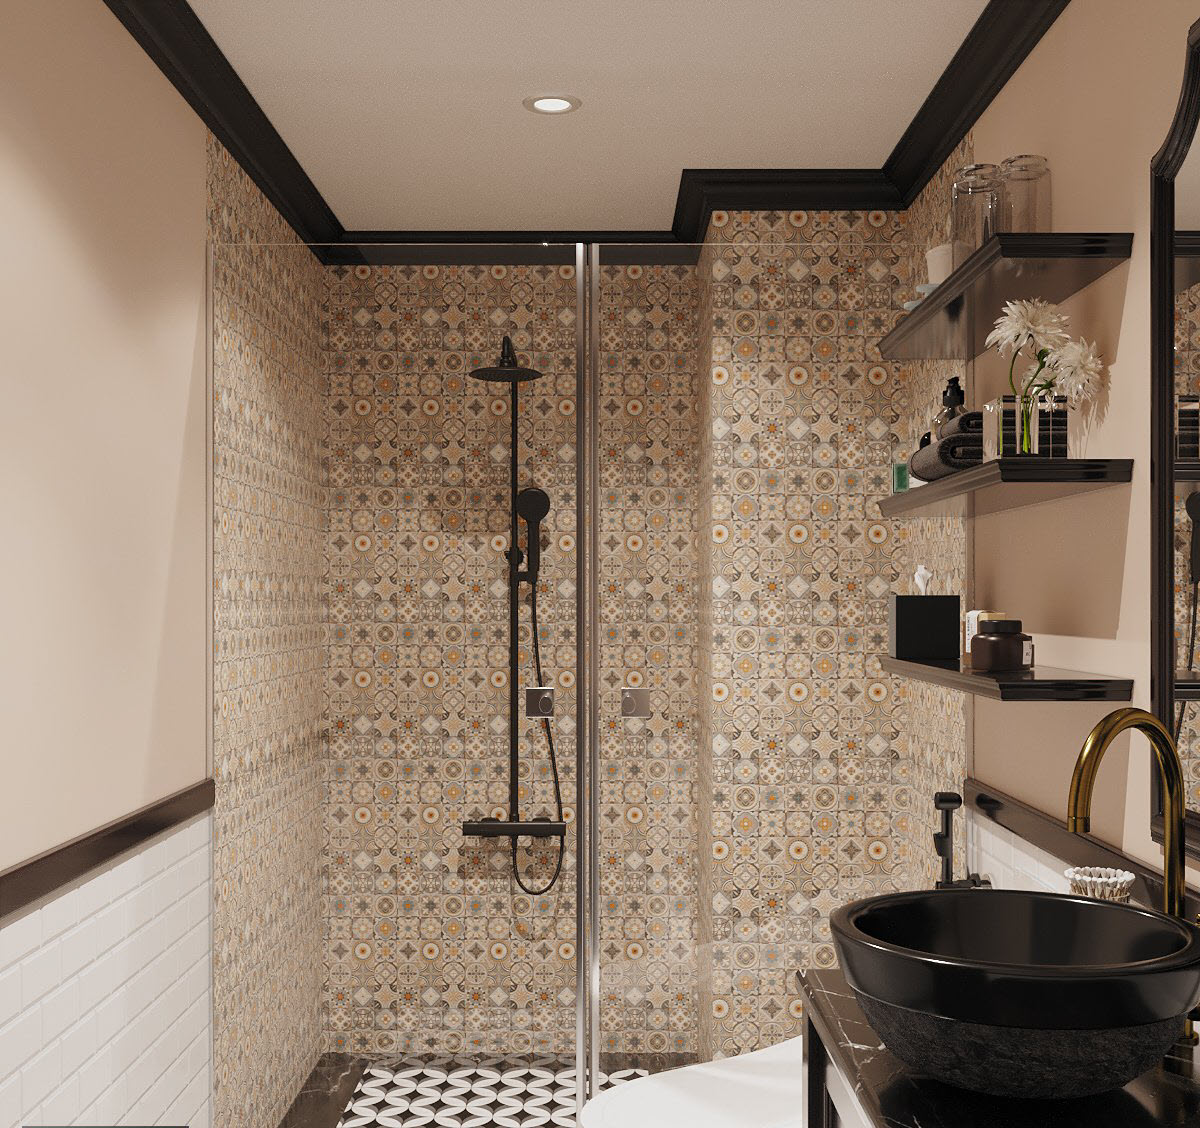 Thiết kế phòng tắm tuân thủ nguyên tắc phối màu xuyên suốt căn hộ với 3 tông trắng - đen - vàng chủ đạo. Vách kính trong suốt đảm bảo khu vệ sinh bên ngoài luôn khô thoáng.